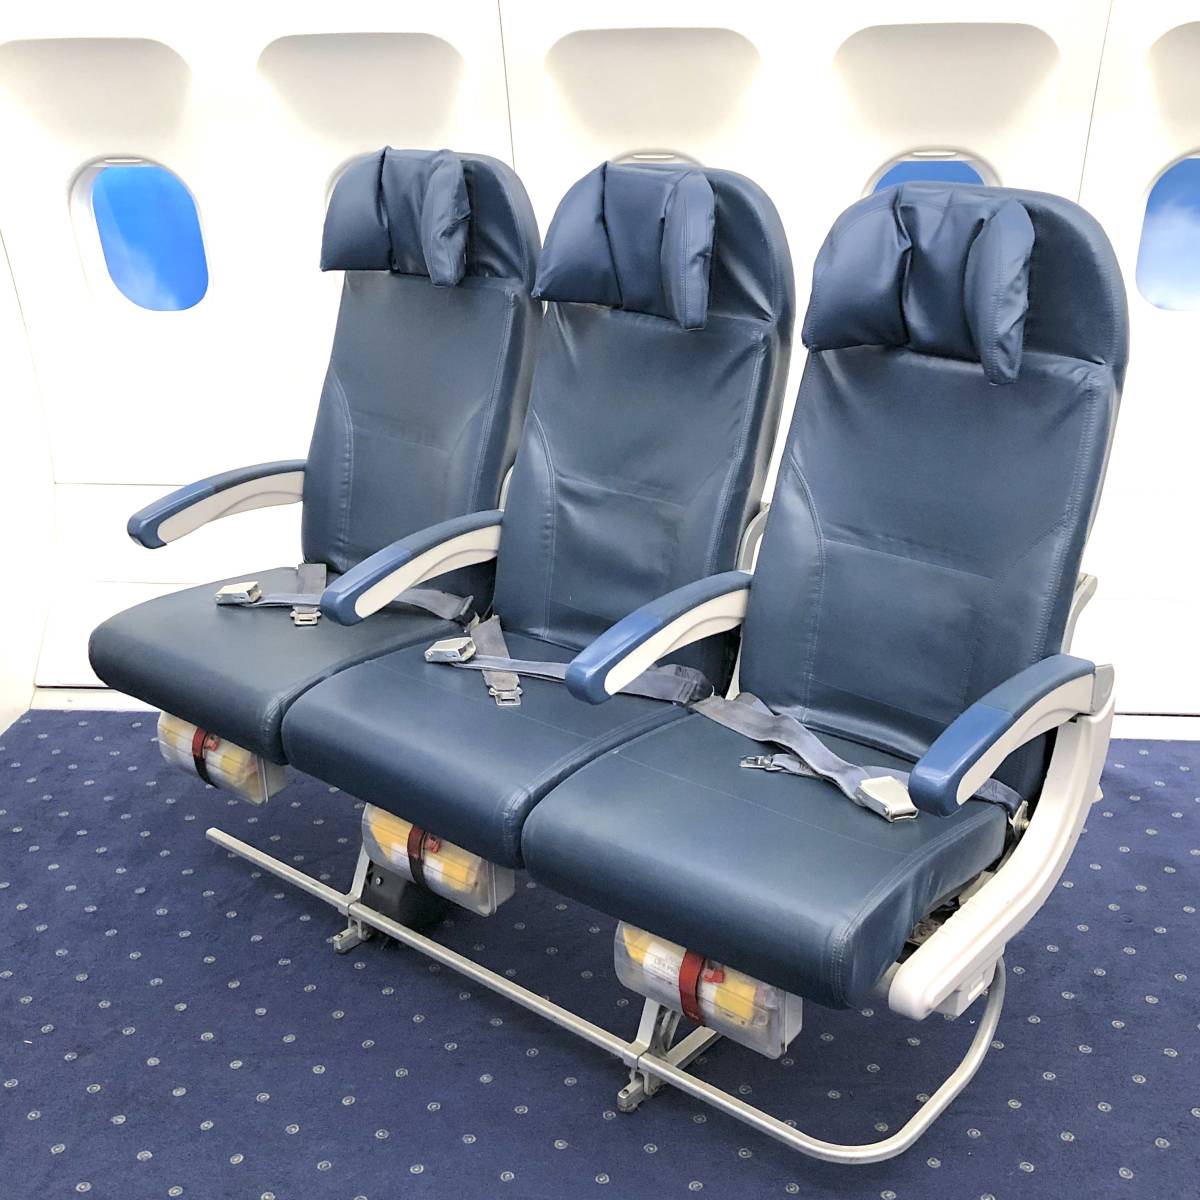 【一点物限定品】機内エンタメモニター付 Boeing747-400 デルタ航空 3列シート 航空機座席 インテリア 退役品 乗客椅子 レア 入手困難品_ヘッドレストも調整できる座席です